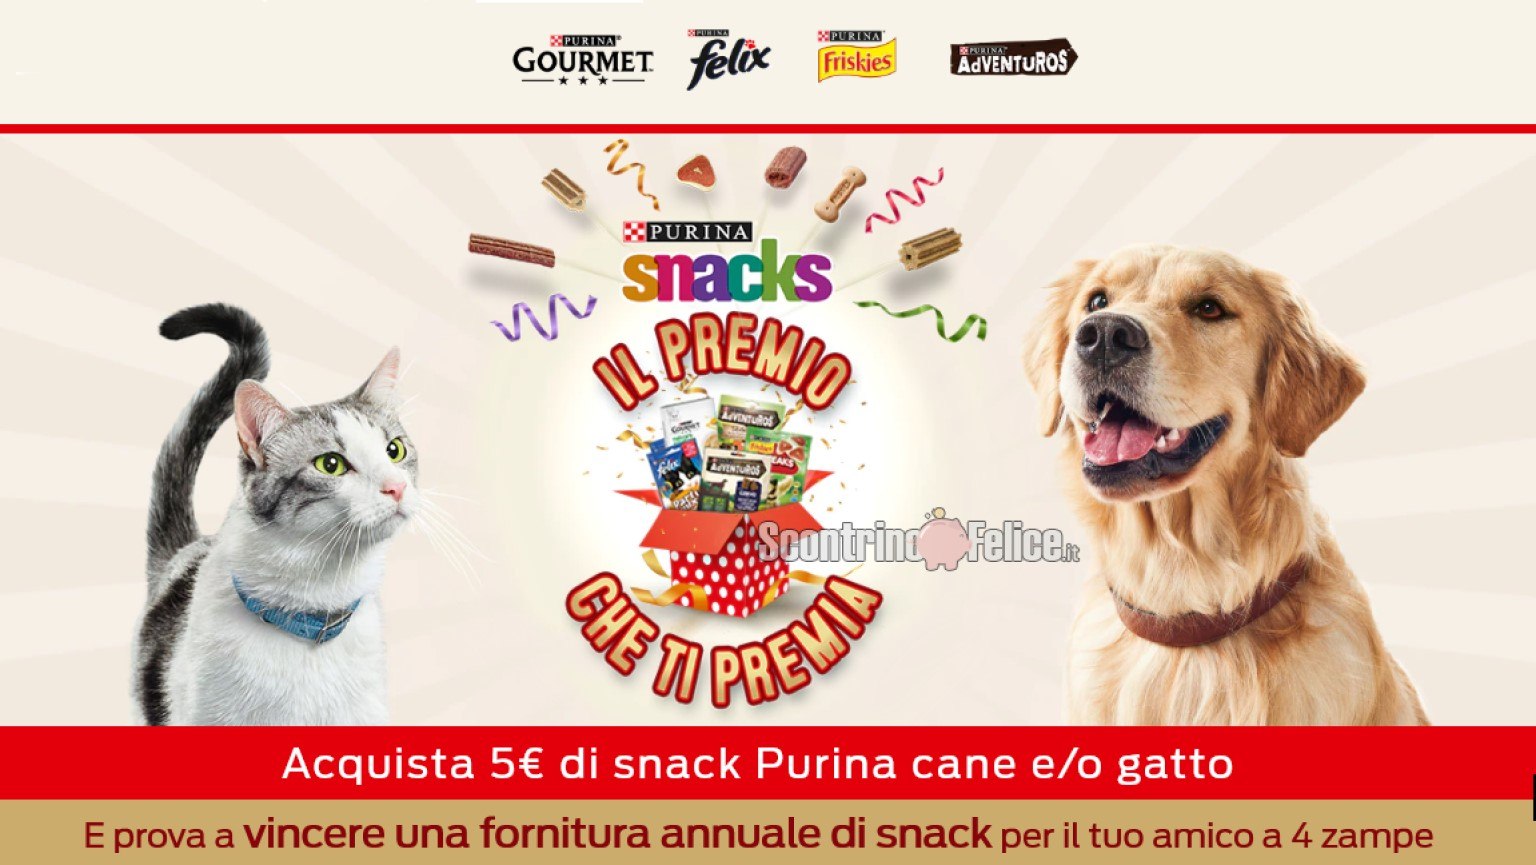 Concorso Purina Il premio che ti premia 2021 in palio 10 forniture annuali di Snack per cane e gatto